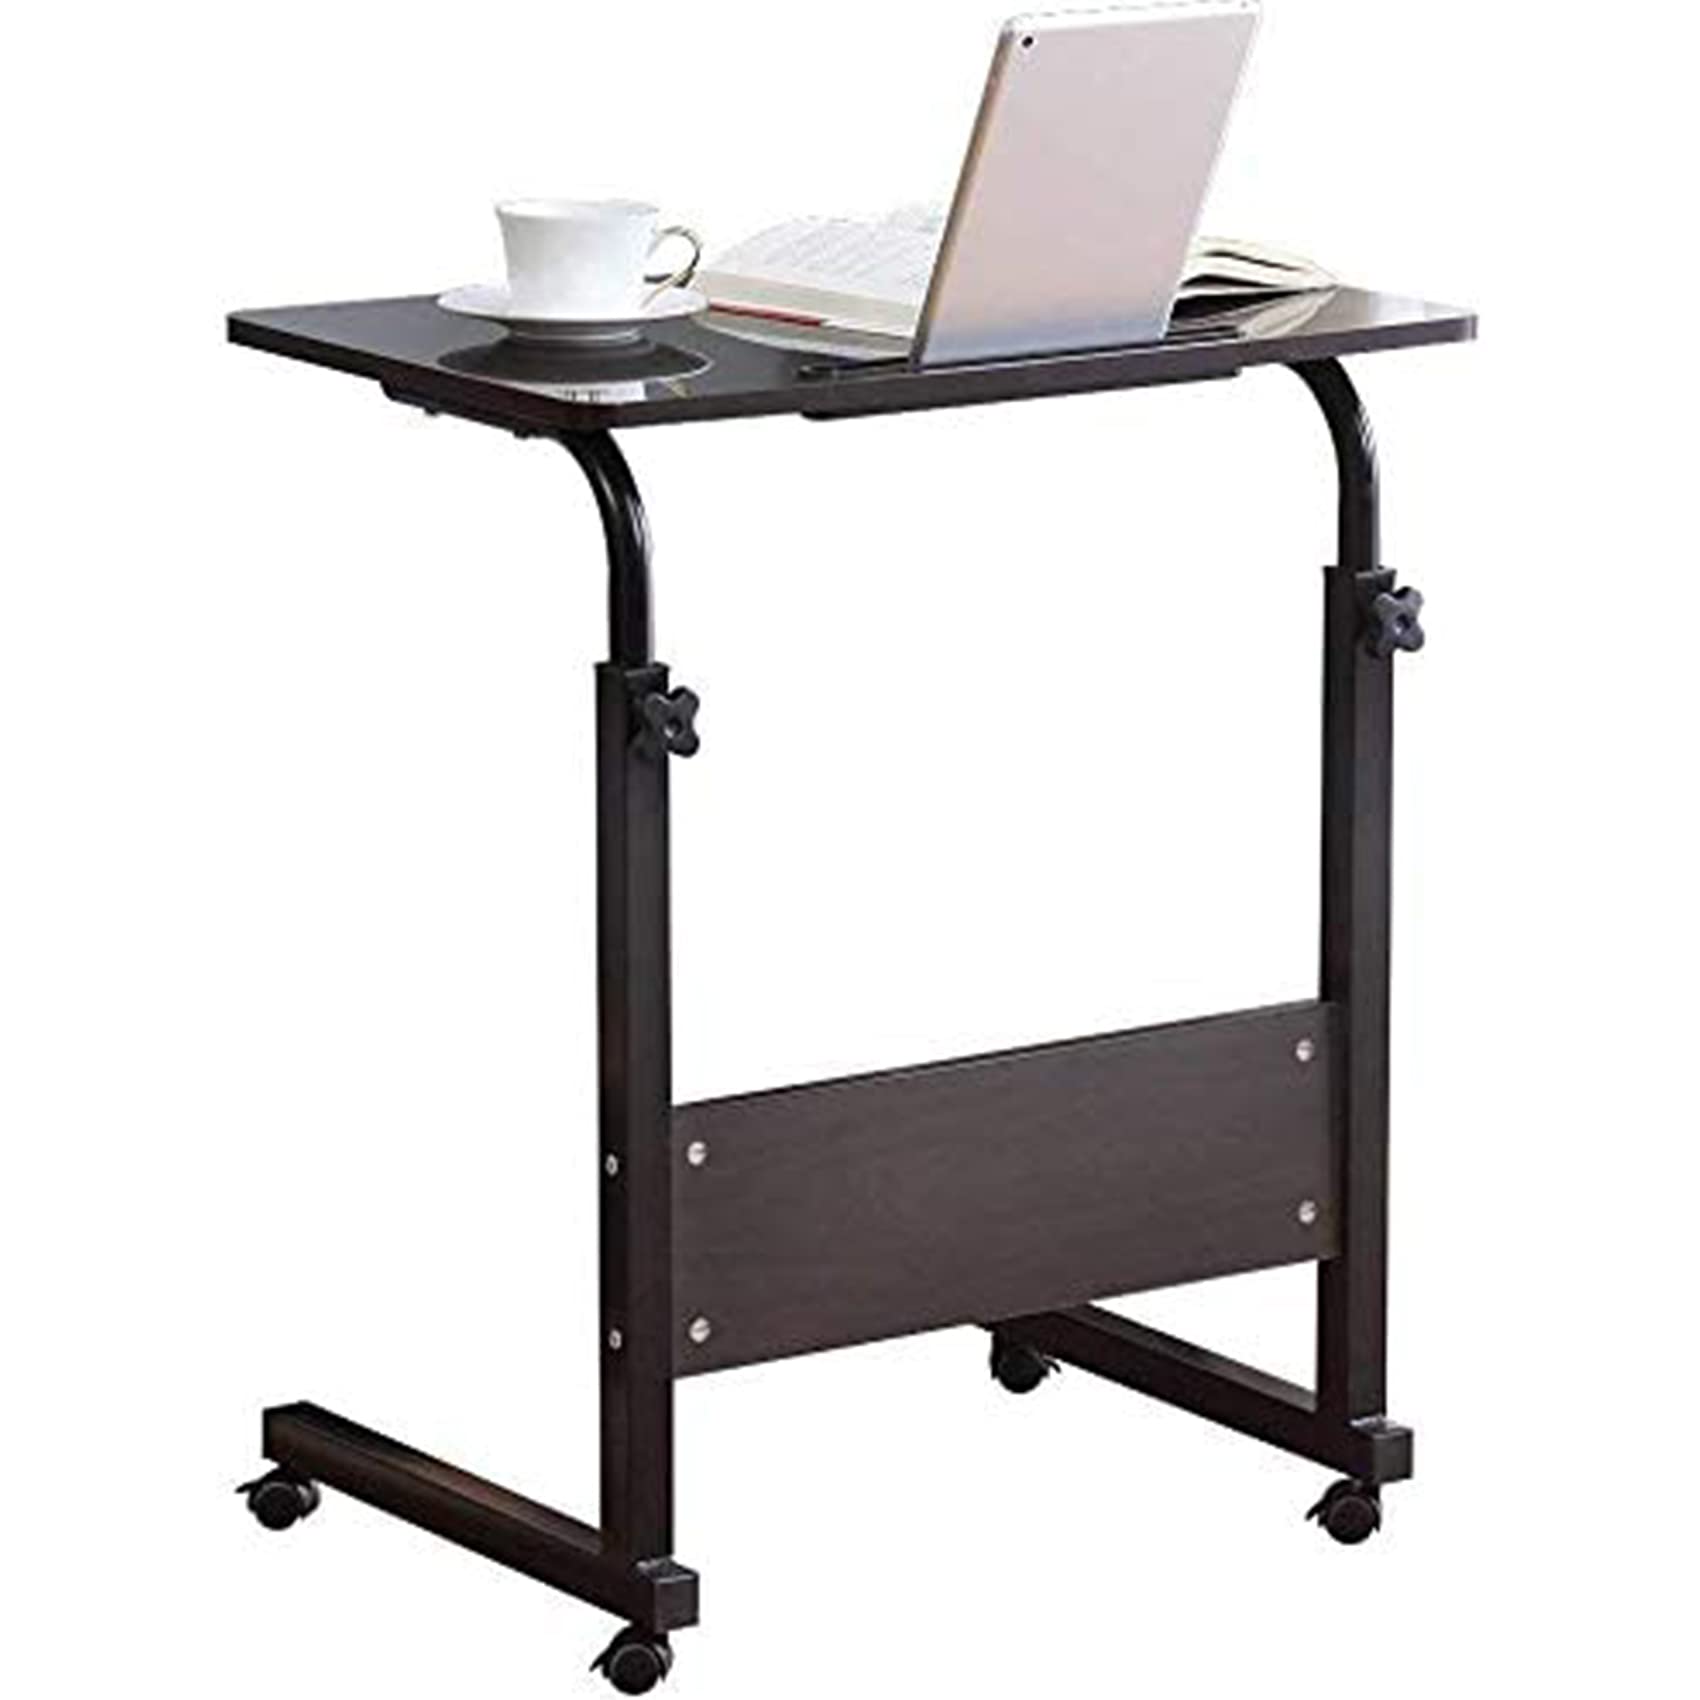 Standing Desk Adjustable Laptop Desk with Tablet iPad Slot Portable Desk for Laptop with Wheels Mobile Workstation Stand up Desks for Home Office (...